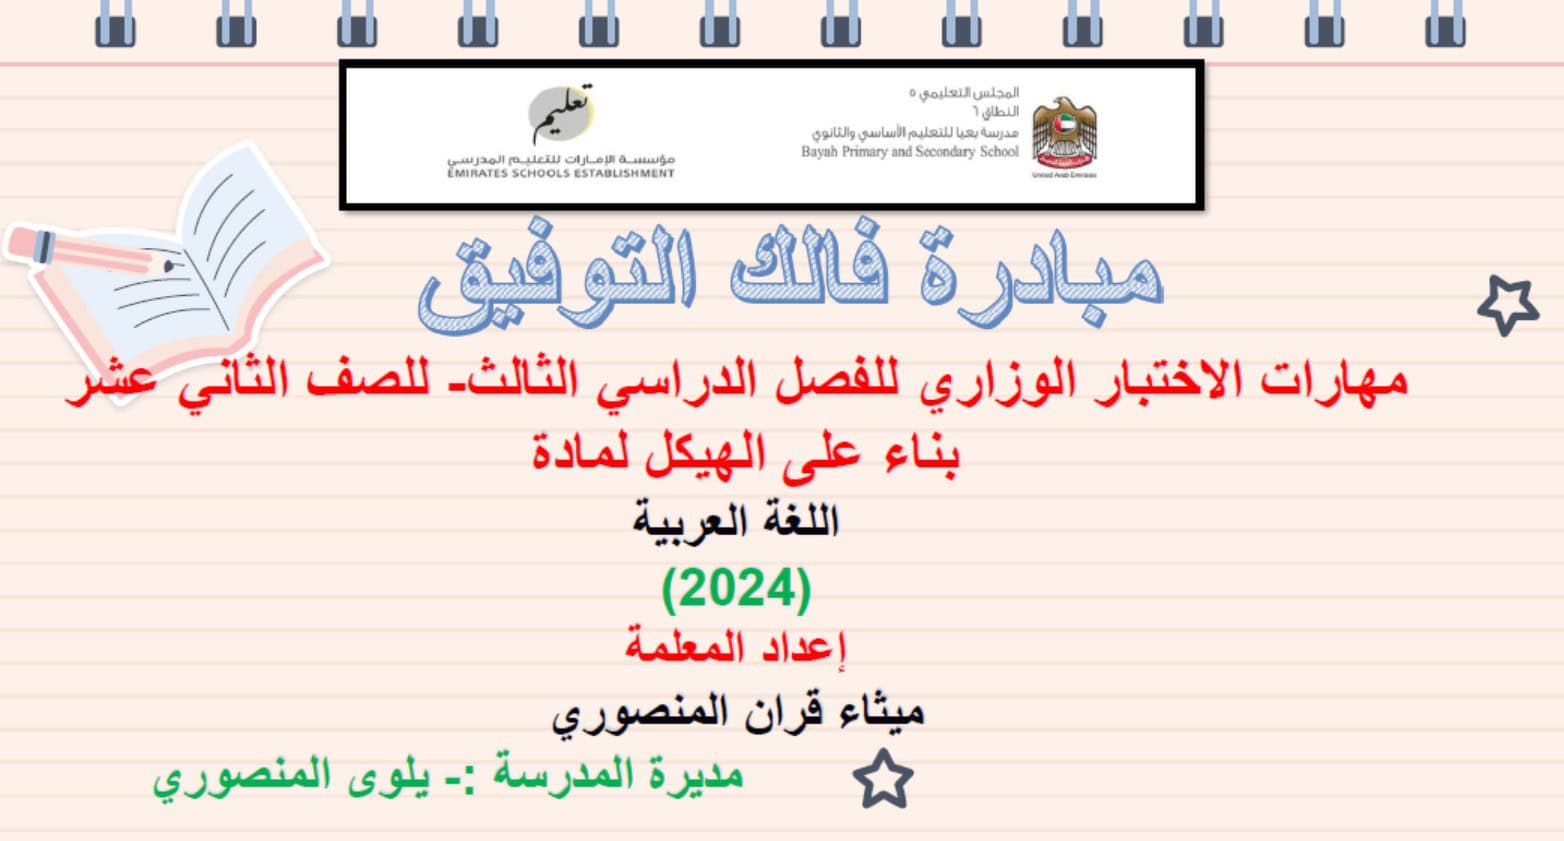 مهارات الاختبار الوزاري بناء على الهيكل اللغة العربية الصف الثاني عشر